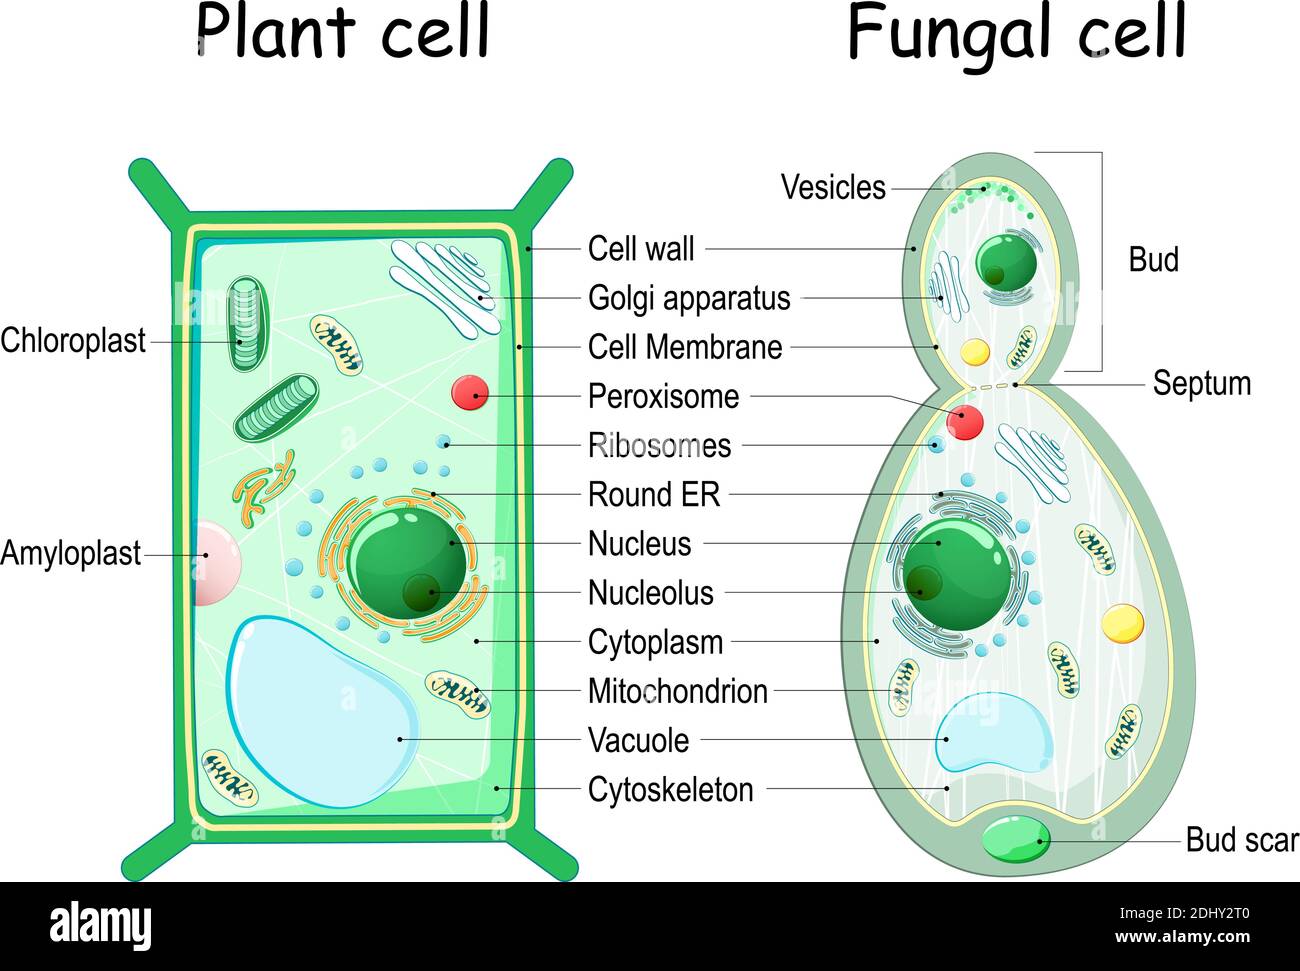 Estructura celular de las células vegetales y fúngicas (levaduras). Sección transversal y anatomía celular. Gráfico de Biología. Ilustración vectorial sobre fondo blanco Ilustración del Vector